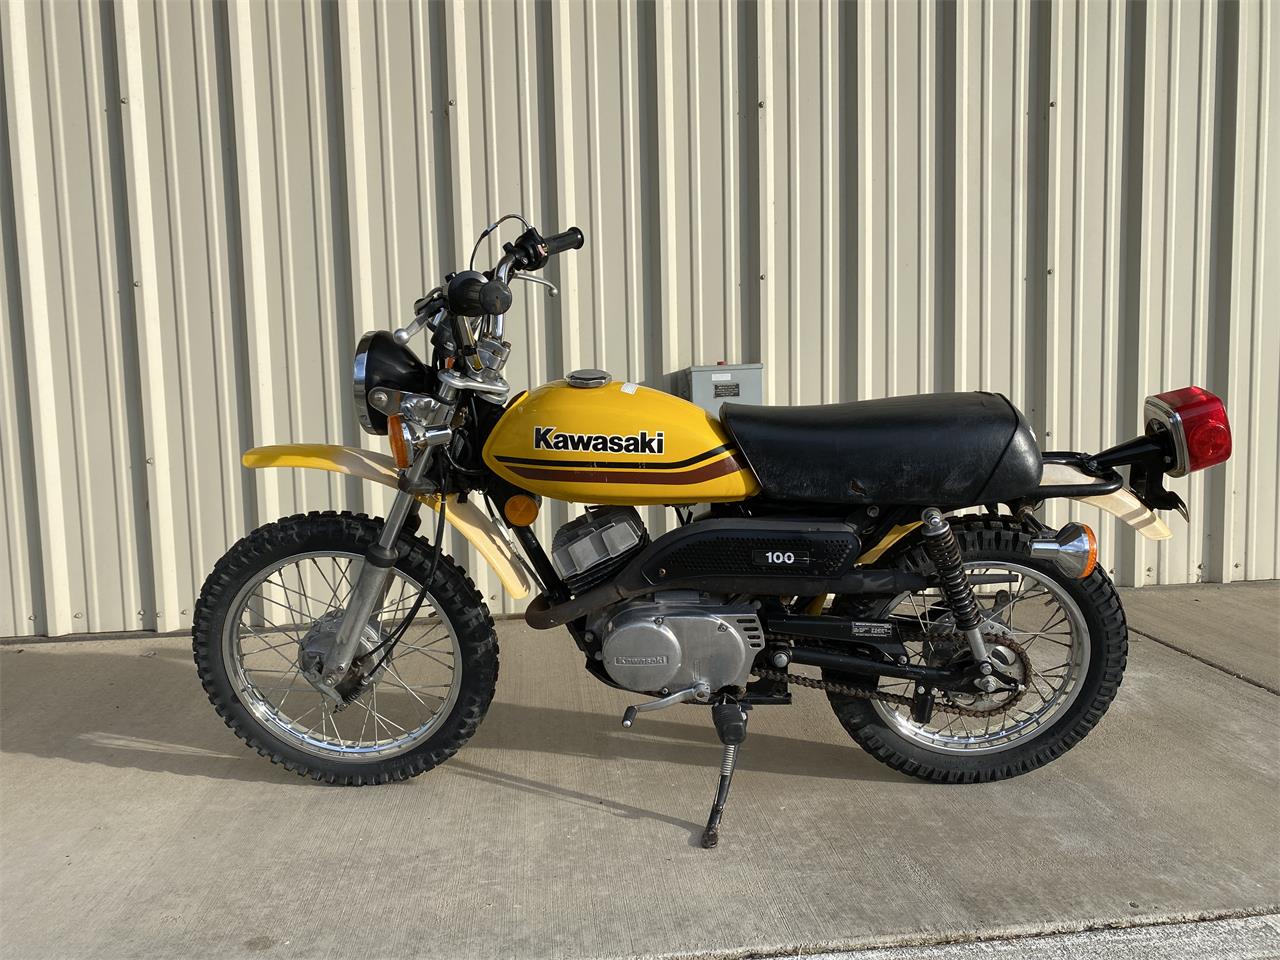 1978 Kawasaki Motorcycle in Anderson , Ca